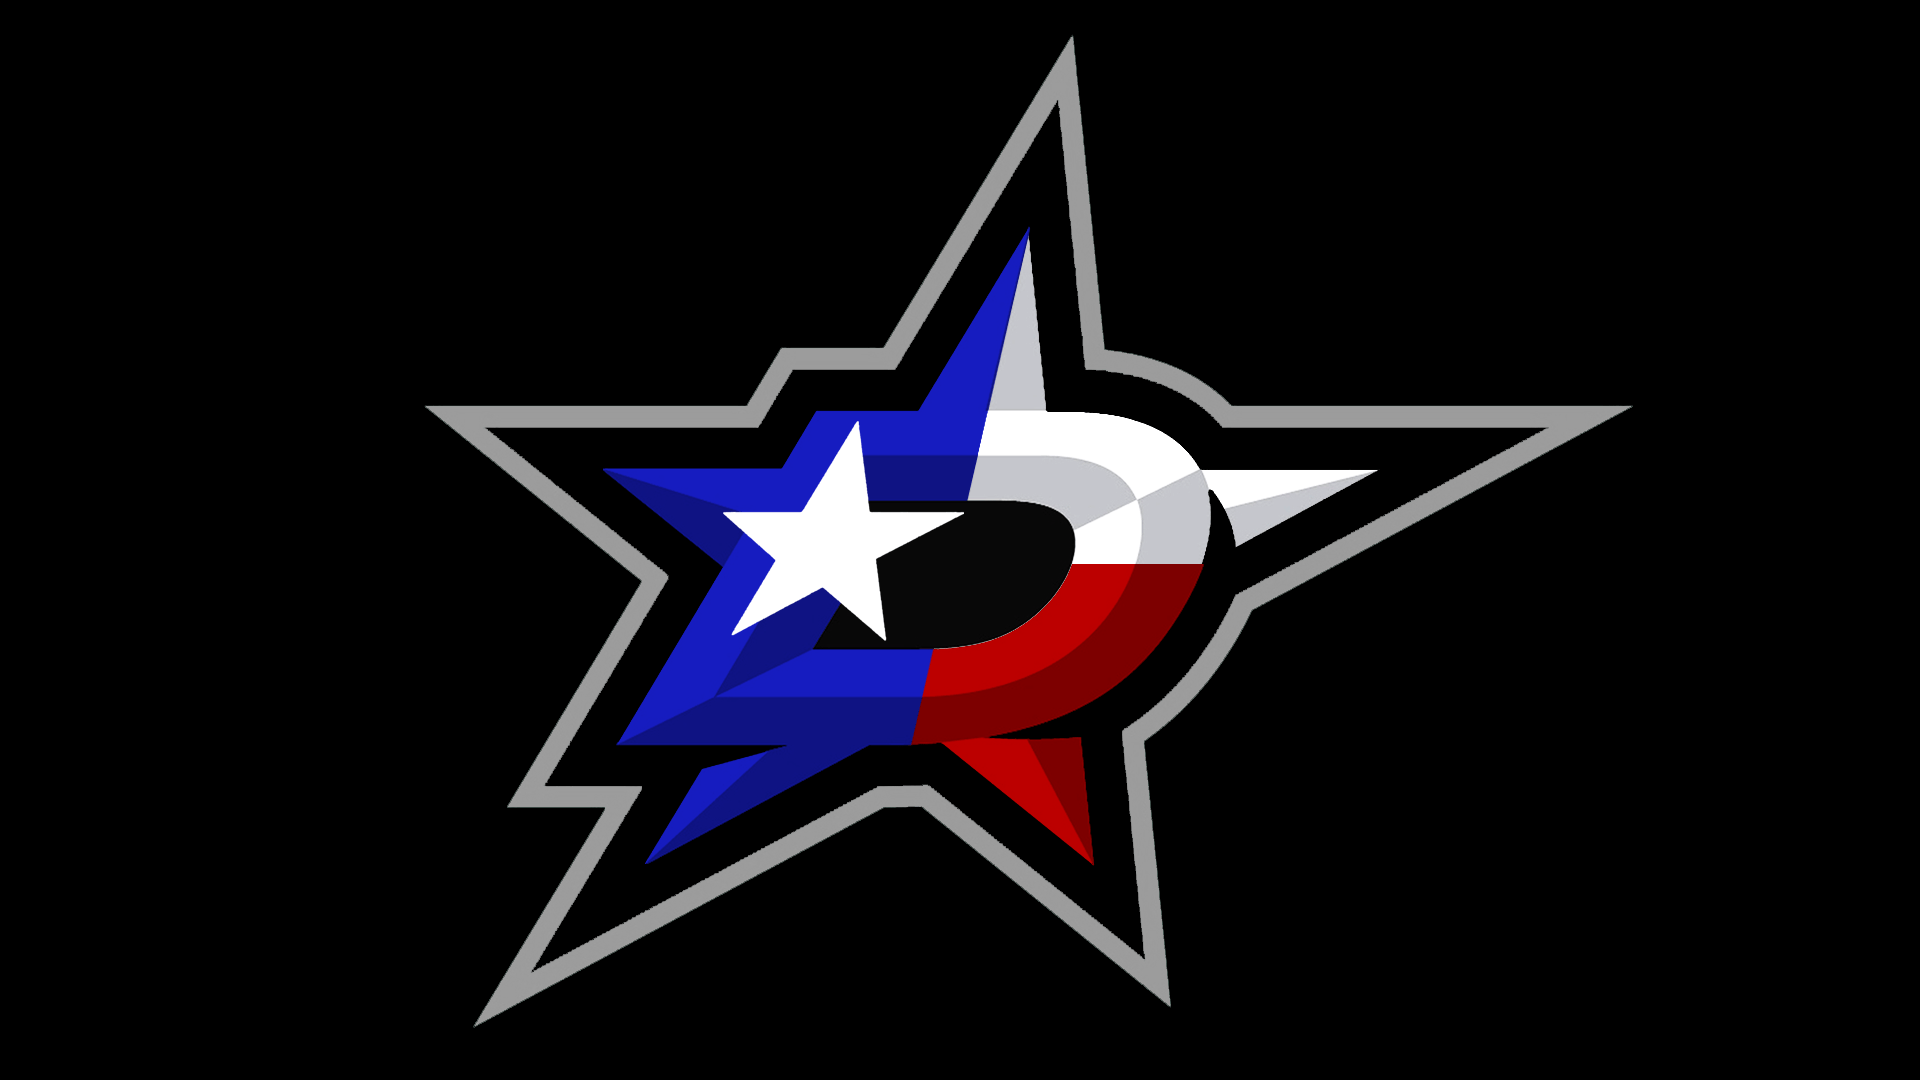 Dallas Stars Logo - Dallas Stars logo concept made by /r/hockey redditor : DallasStars